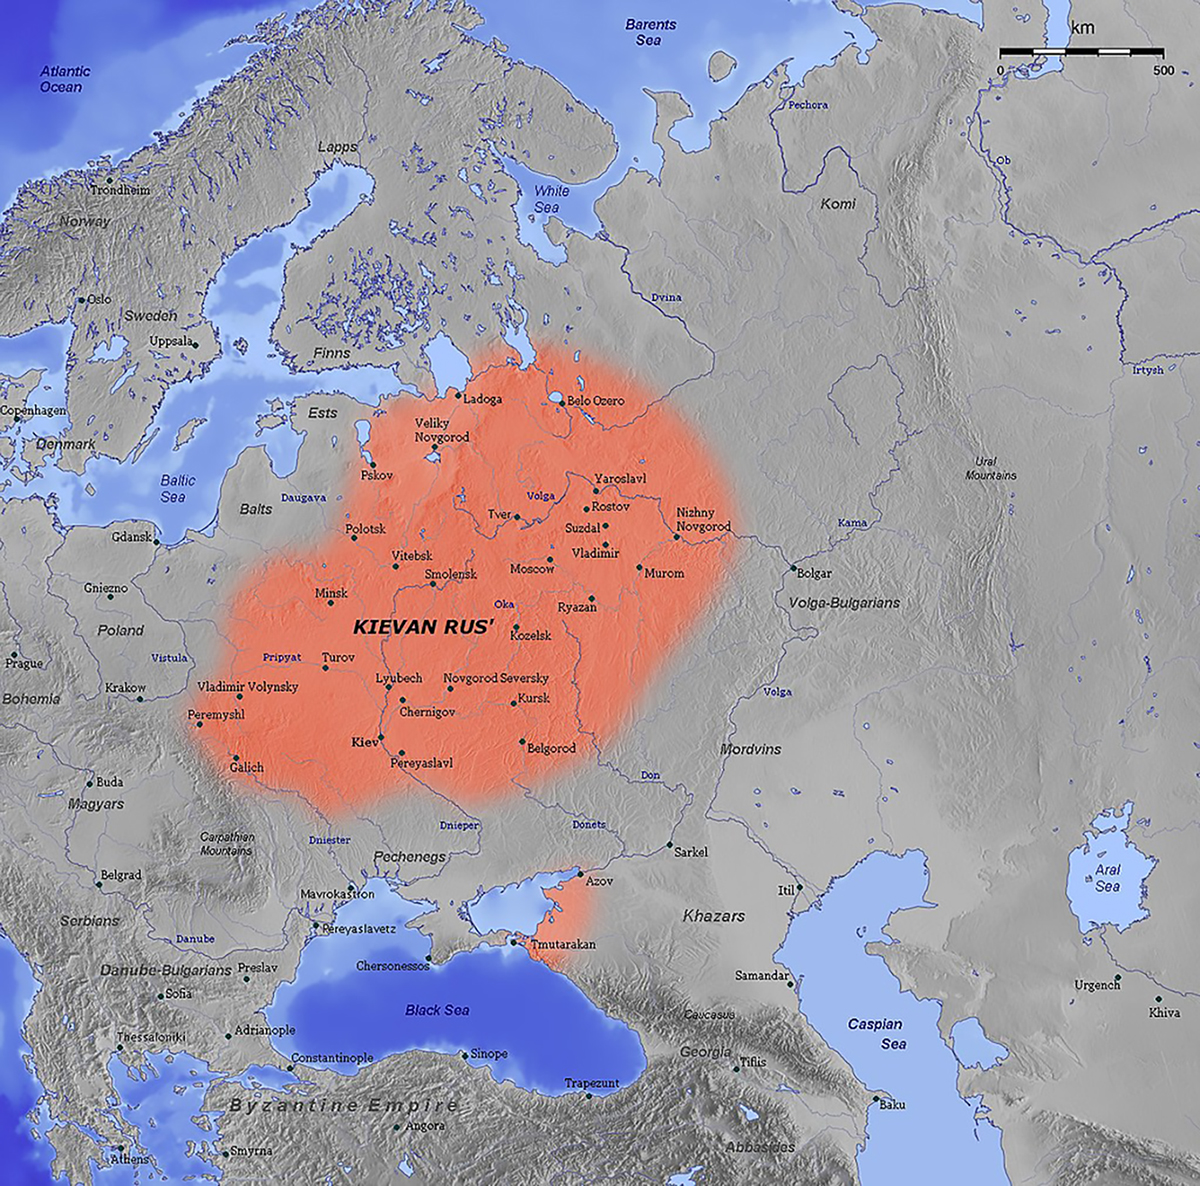 Bản đồ nước Rus Kiev hồi thế kỷ XI. Trong thời kỳ huy hoàng của Kiev, vùng đất Nga bao trùm hầu hết Ukraine, Belarus, và phía Tây Nga hiện nay. Ảnh: wikipedia